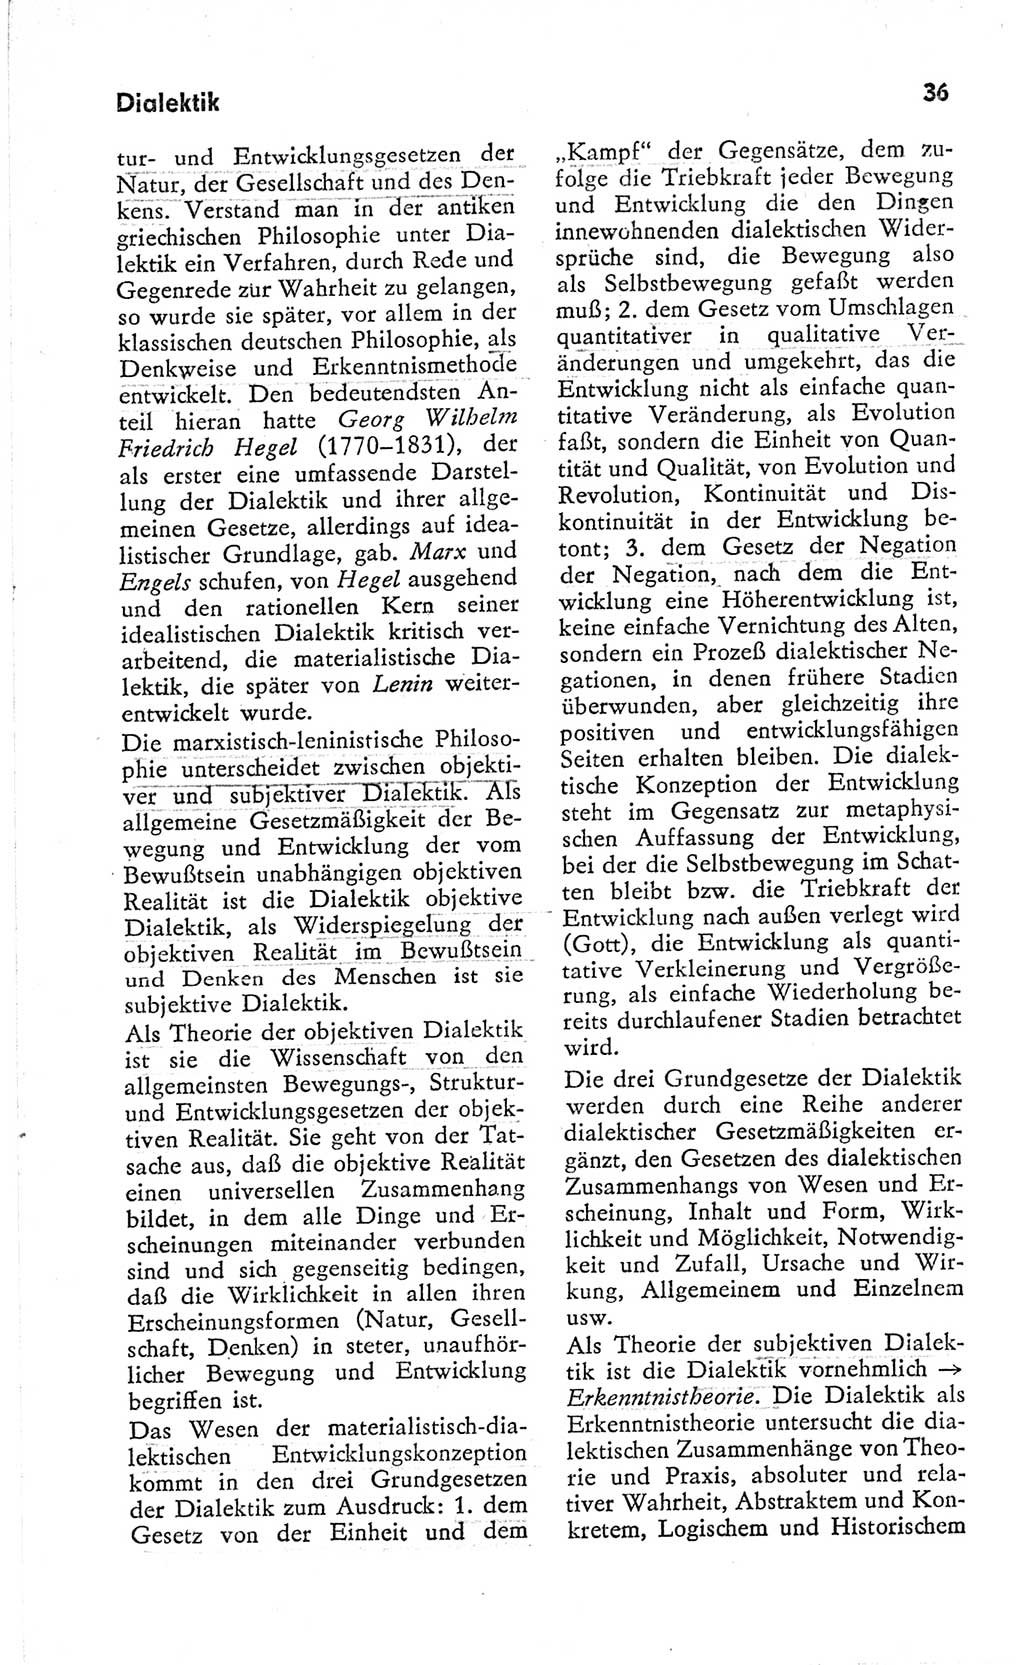 Kleines Wörterbuch der marxistisch-leninistischen Philosophie [Deutsche Demokratische Republik (DDR)] 1966, Seite 36 (Kl. Wb. ML Phil. DDR 1966, S. 36)